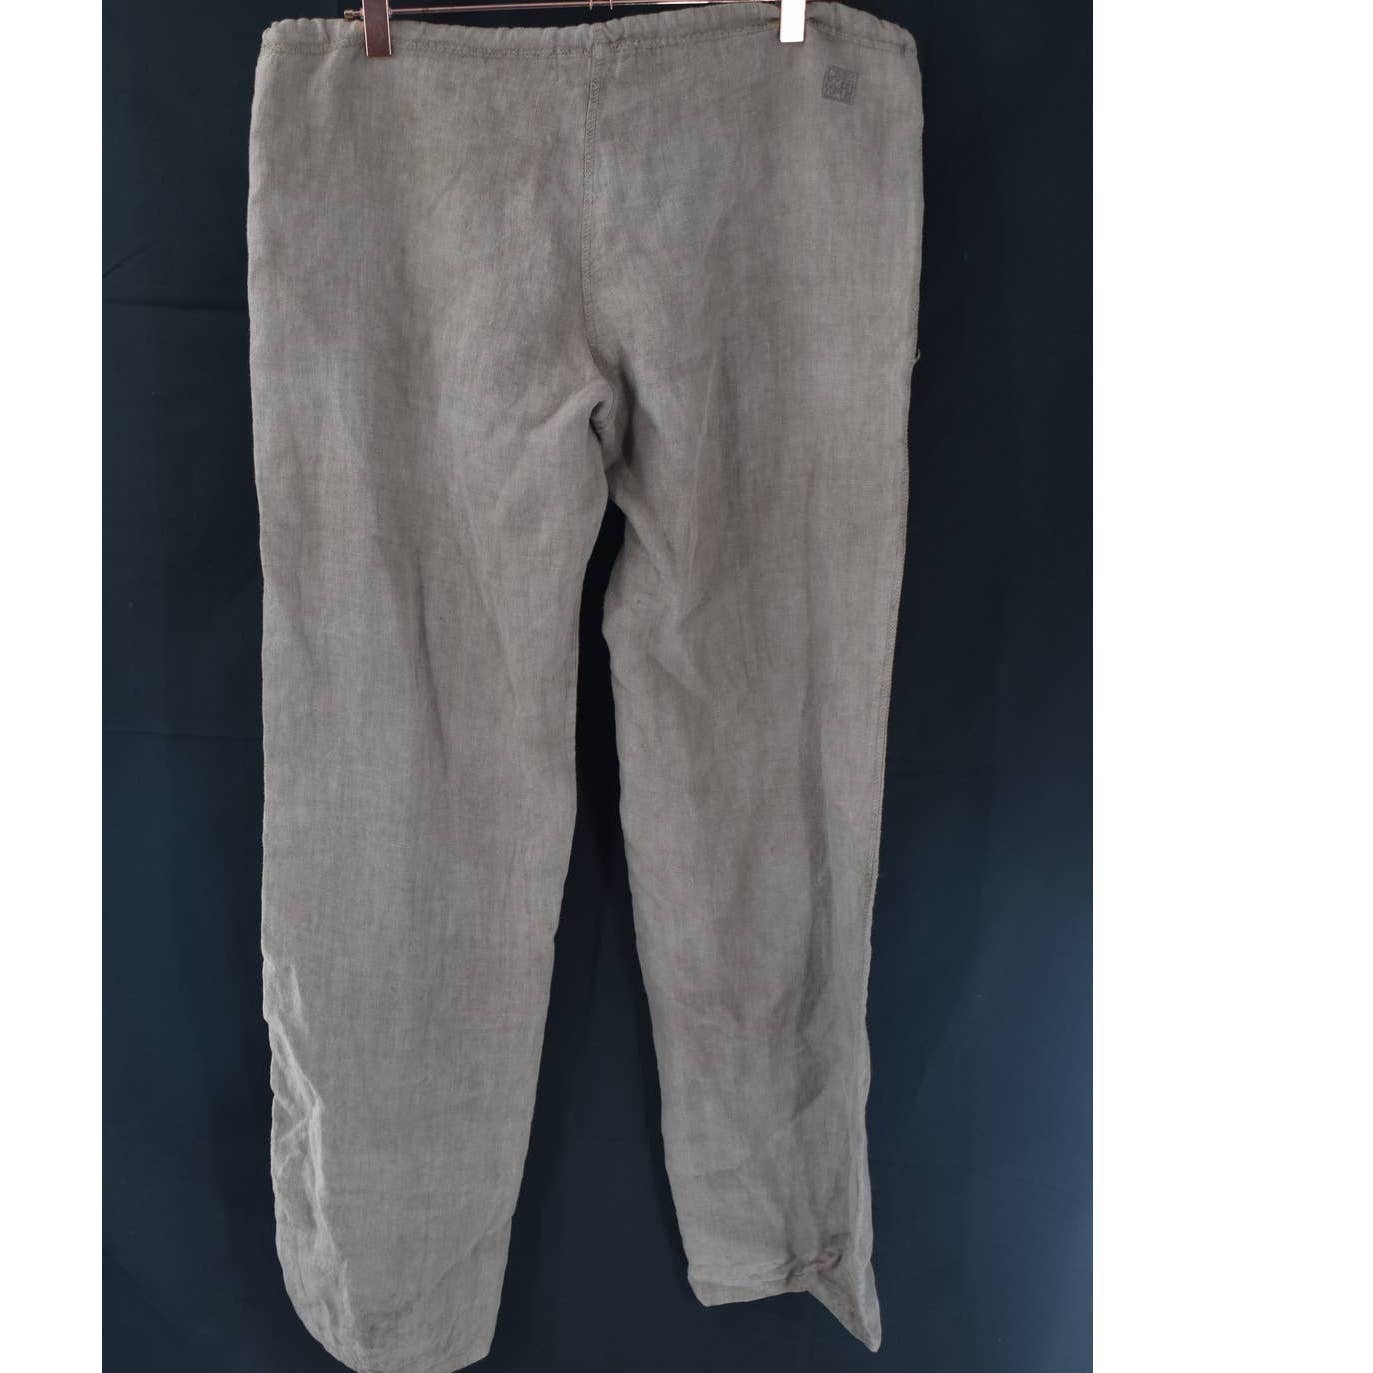 ZENSEi 100% Linen Brown Yoga Jacket and Pants Set- 3